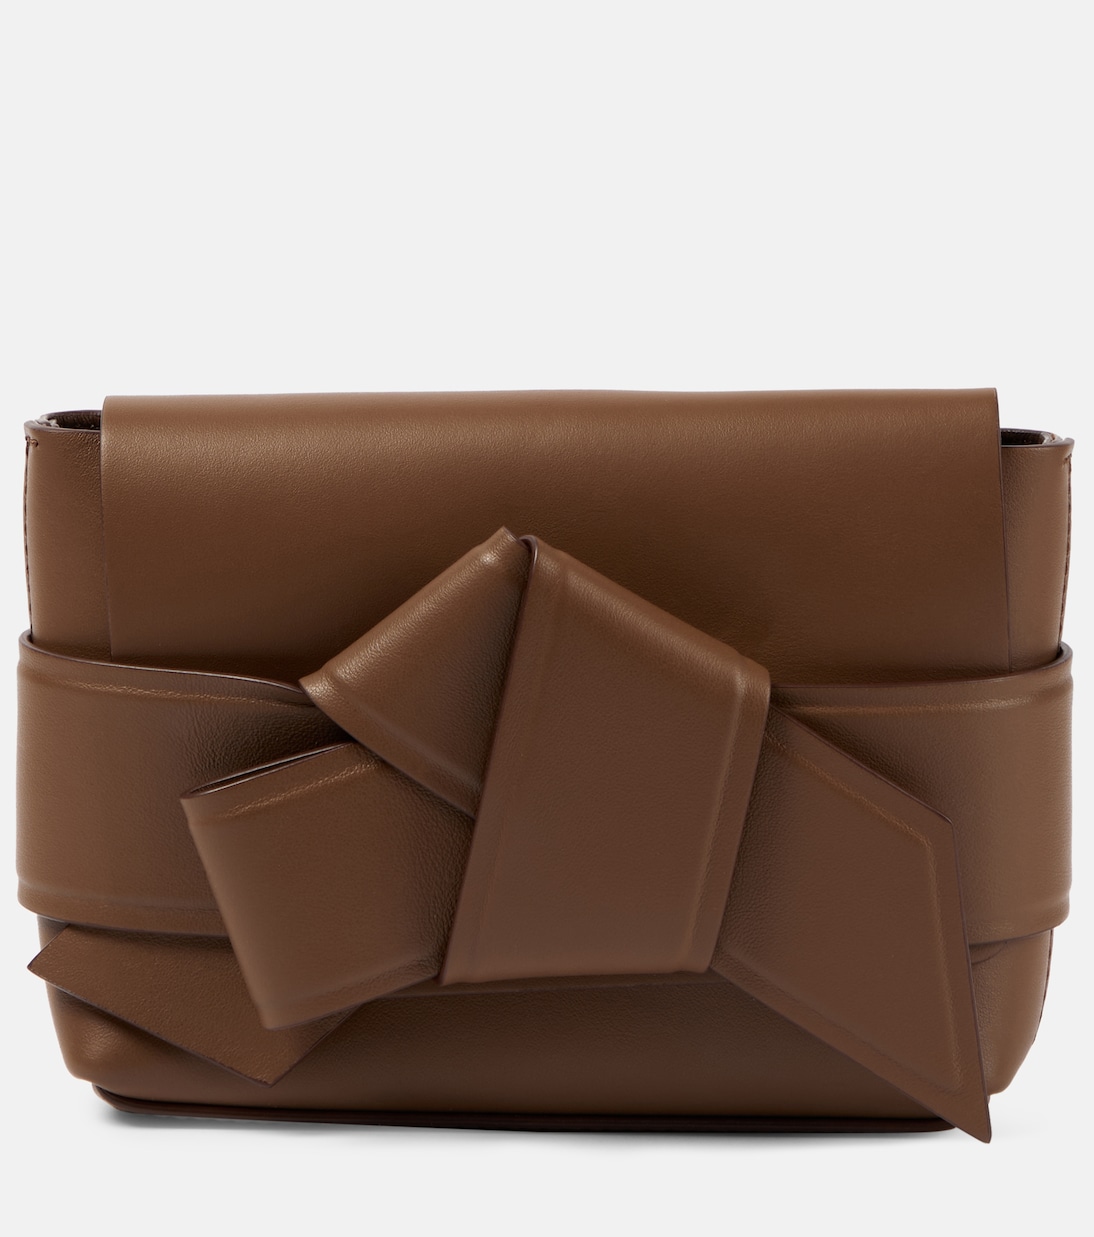 Миниатюрная кожаная сумка через плечо musubi Acne Studios, коричневый ресейл сумка acne studios musubi коричневый отличное